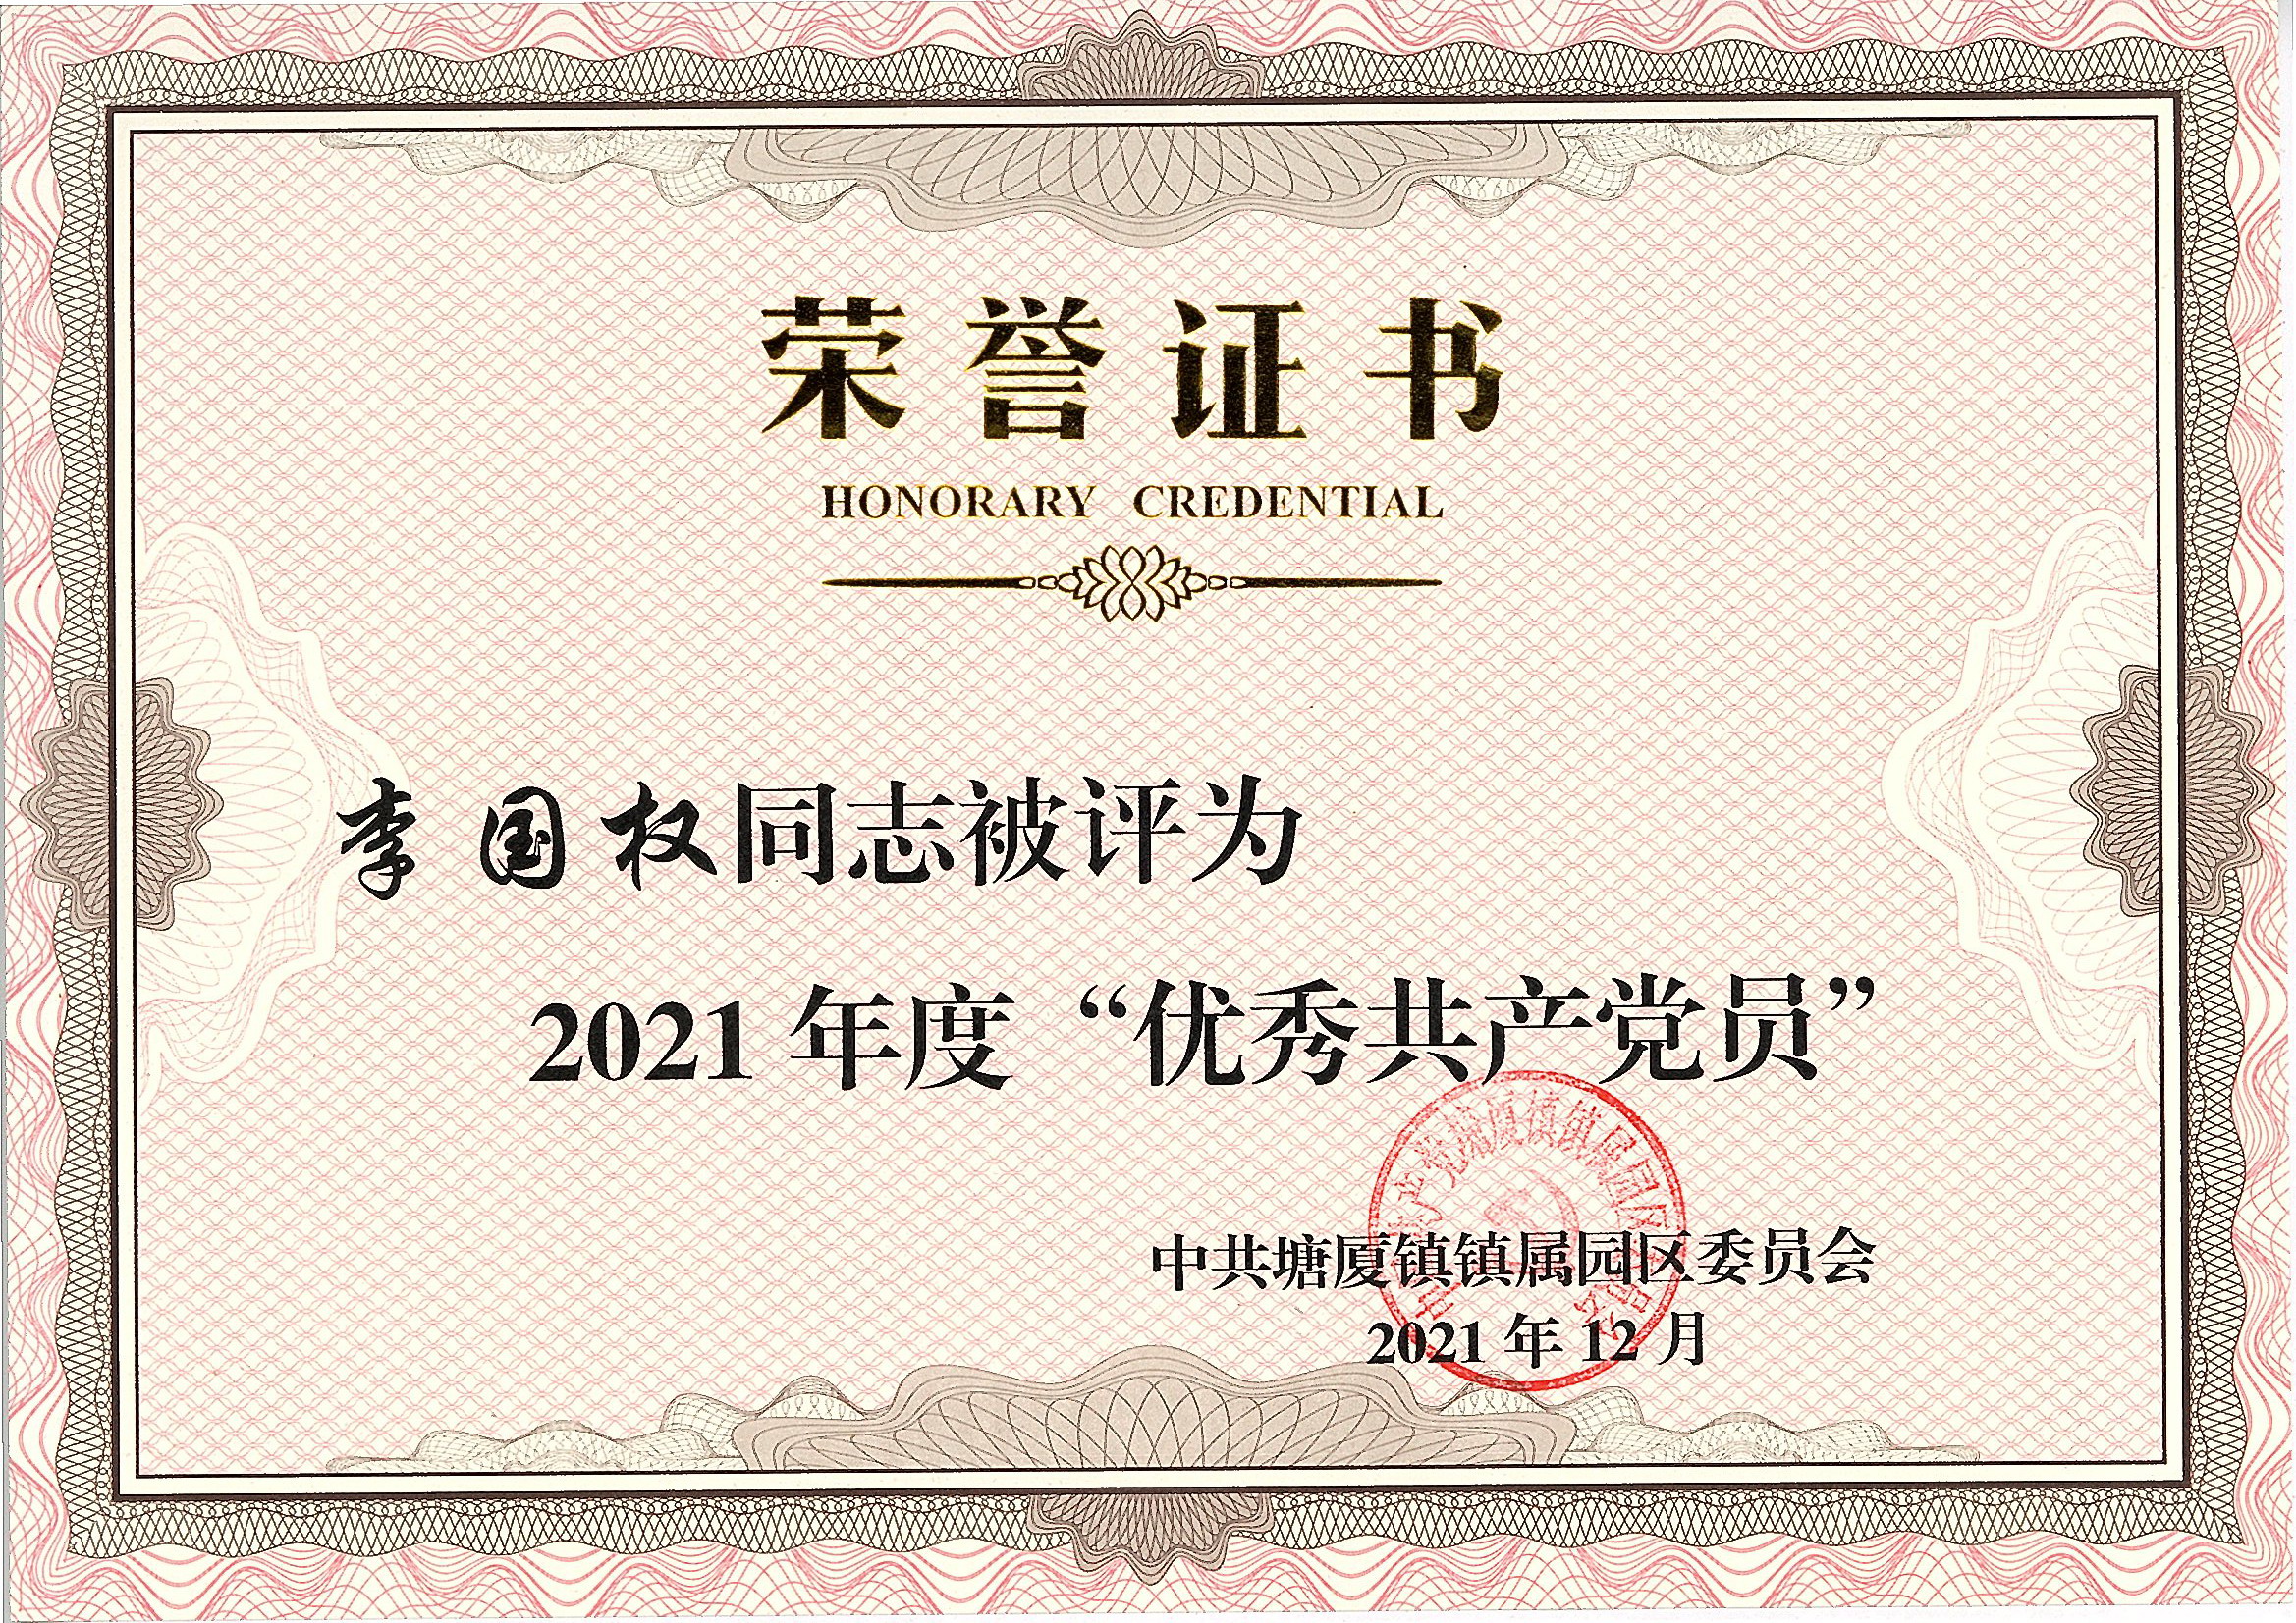 李国权被评为2021年度优秀共产党员.jpg